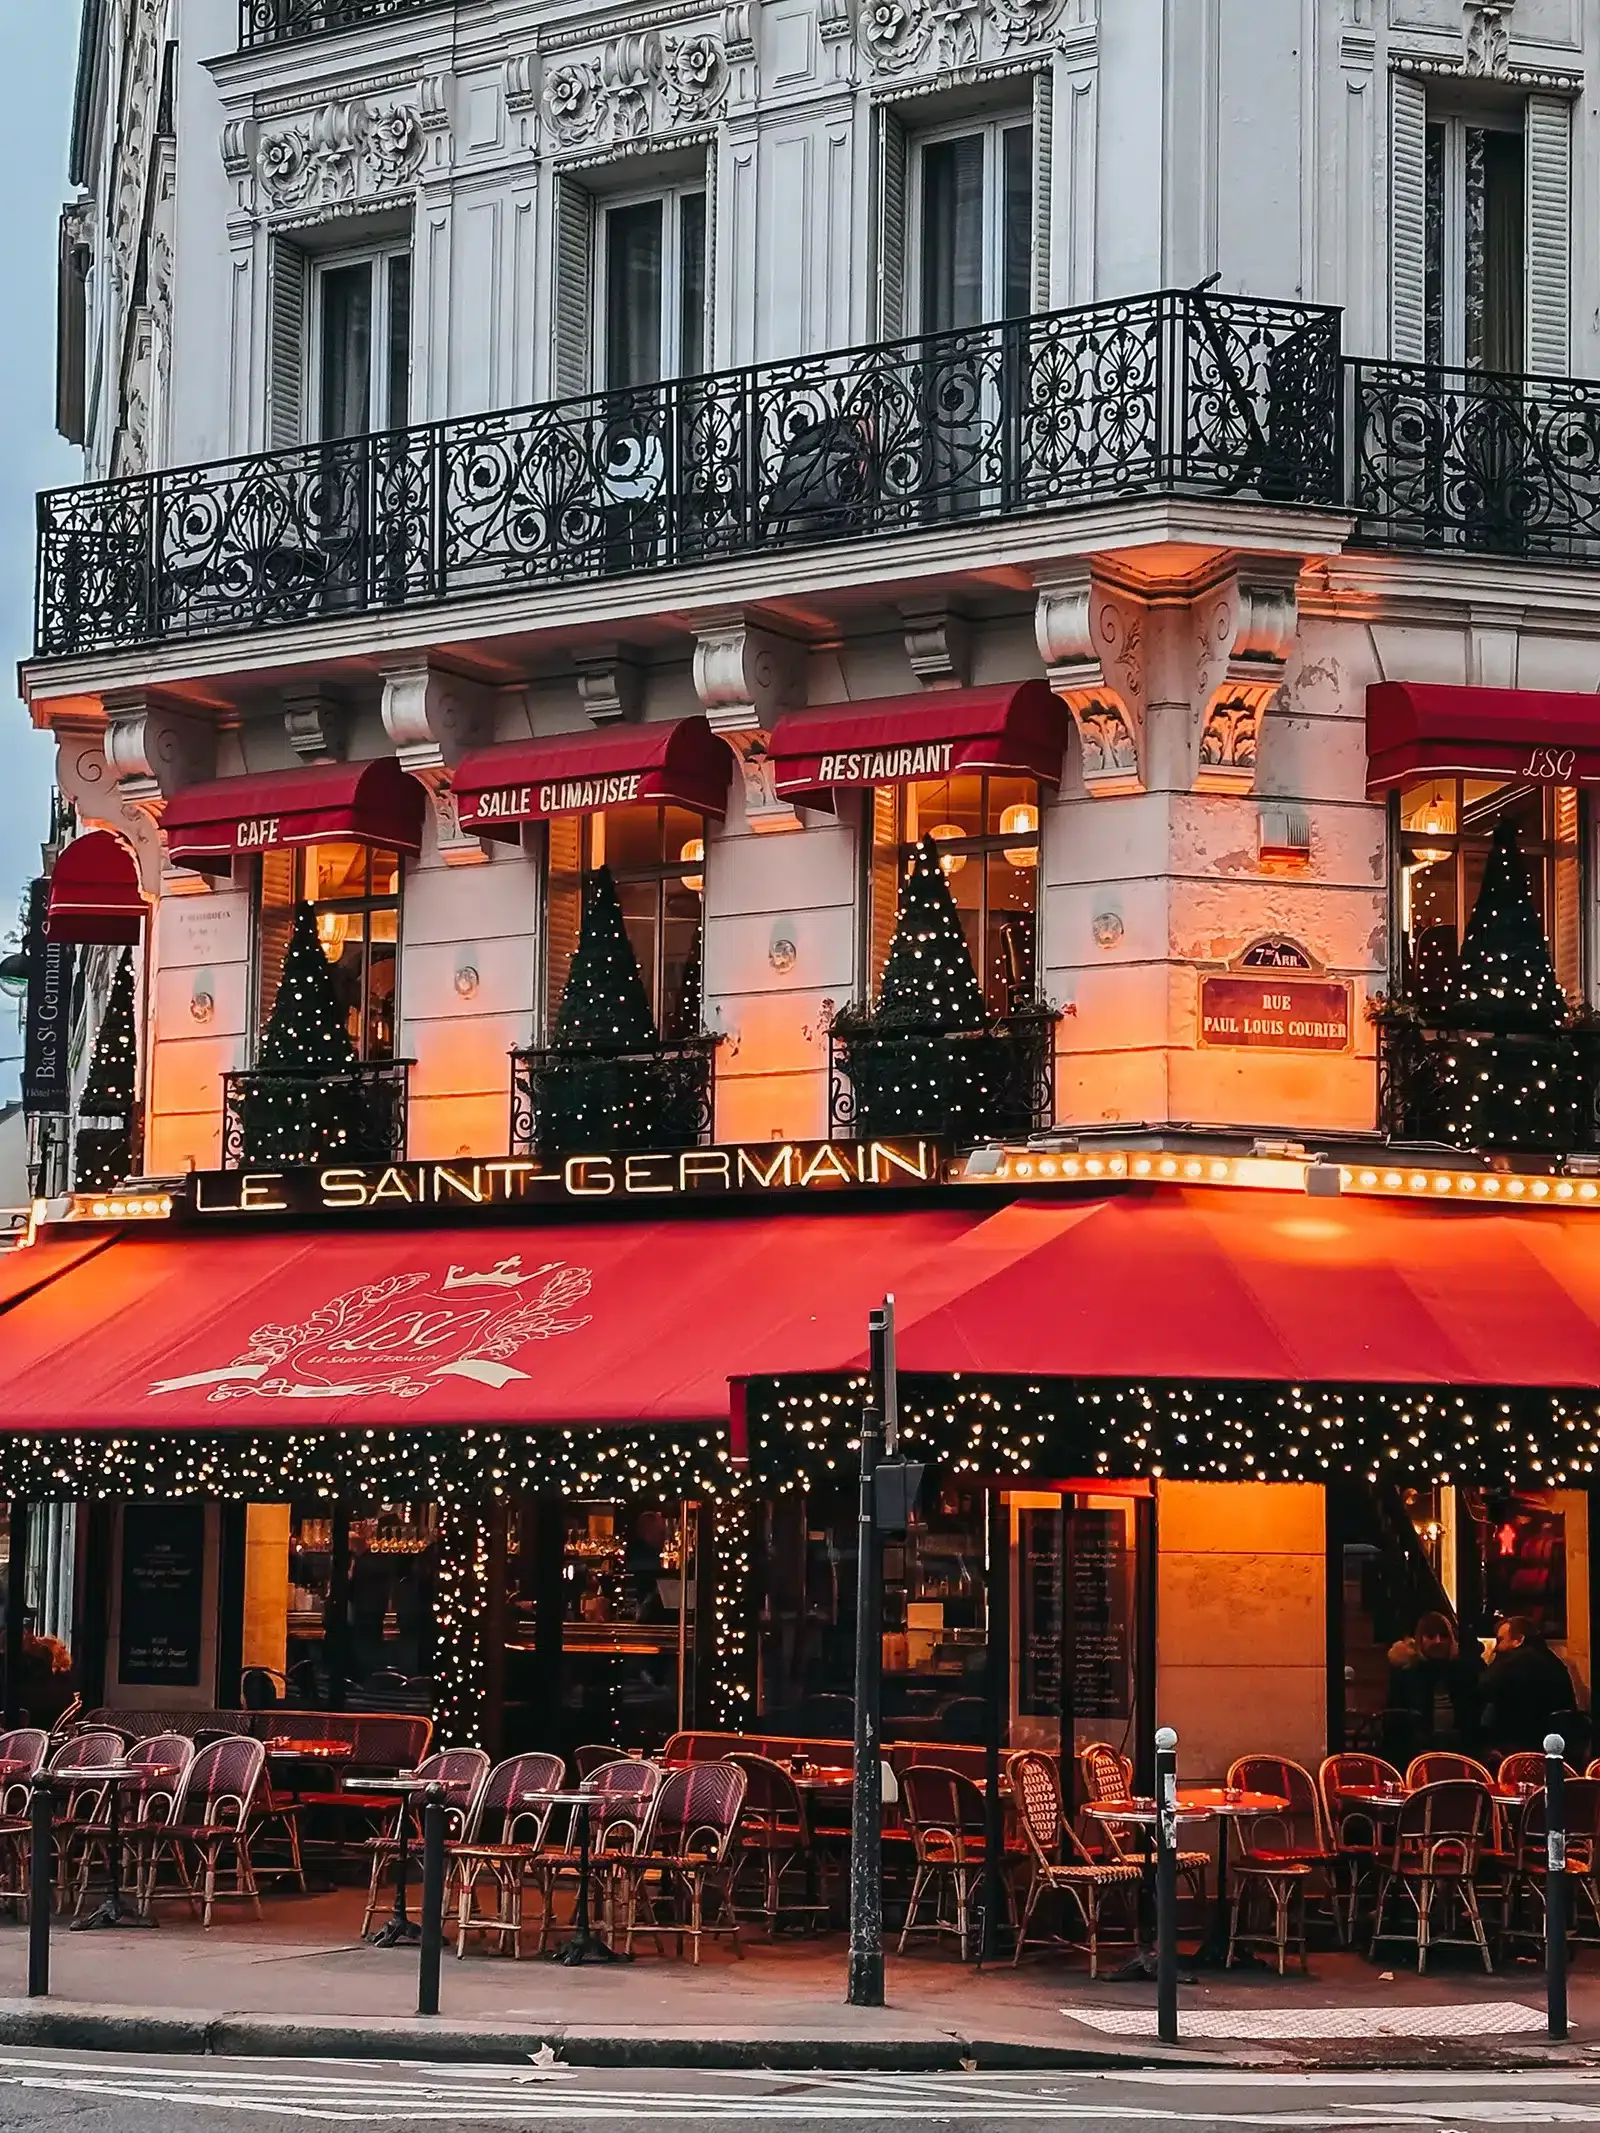 Le Saint Germain Paris Cafe at Christmas